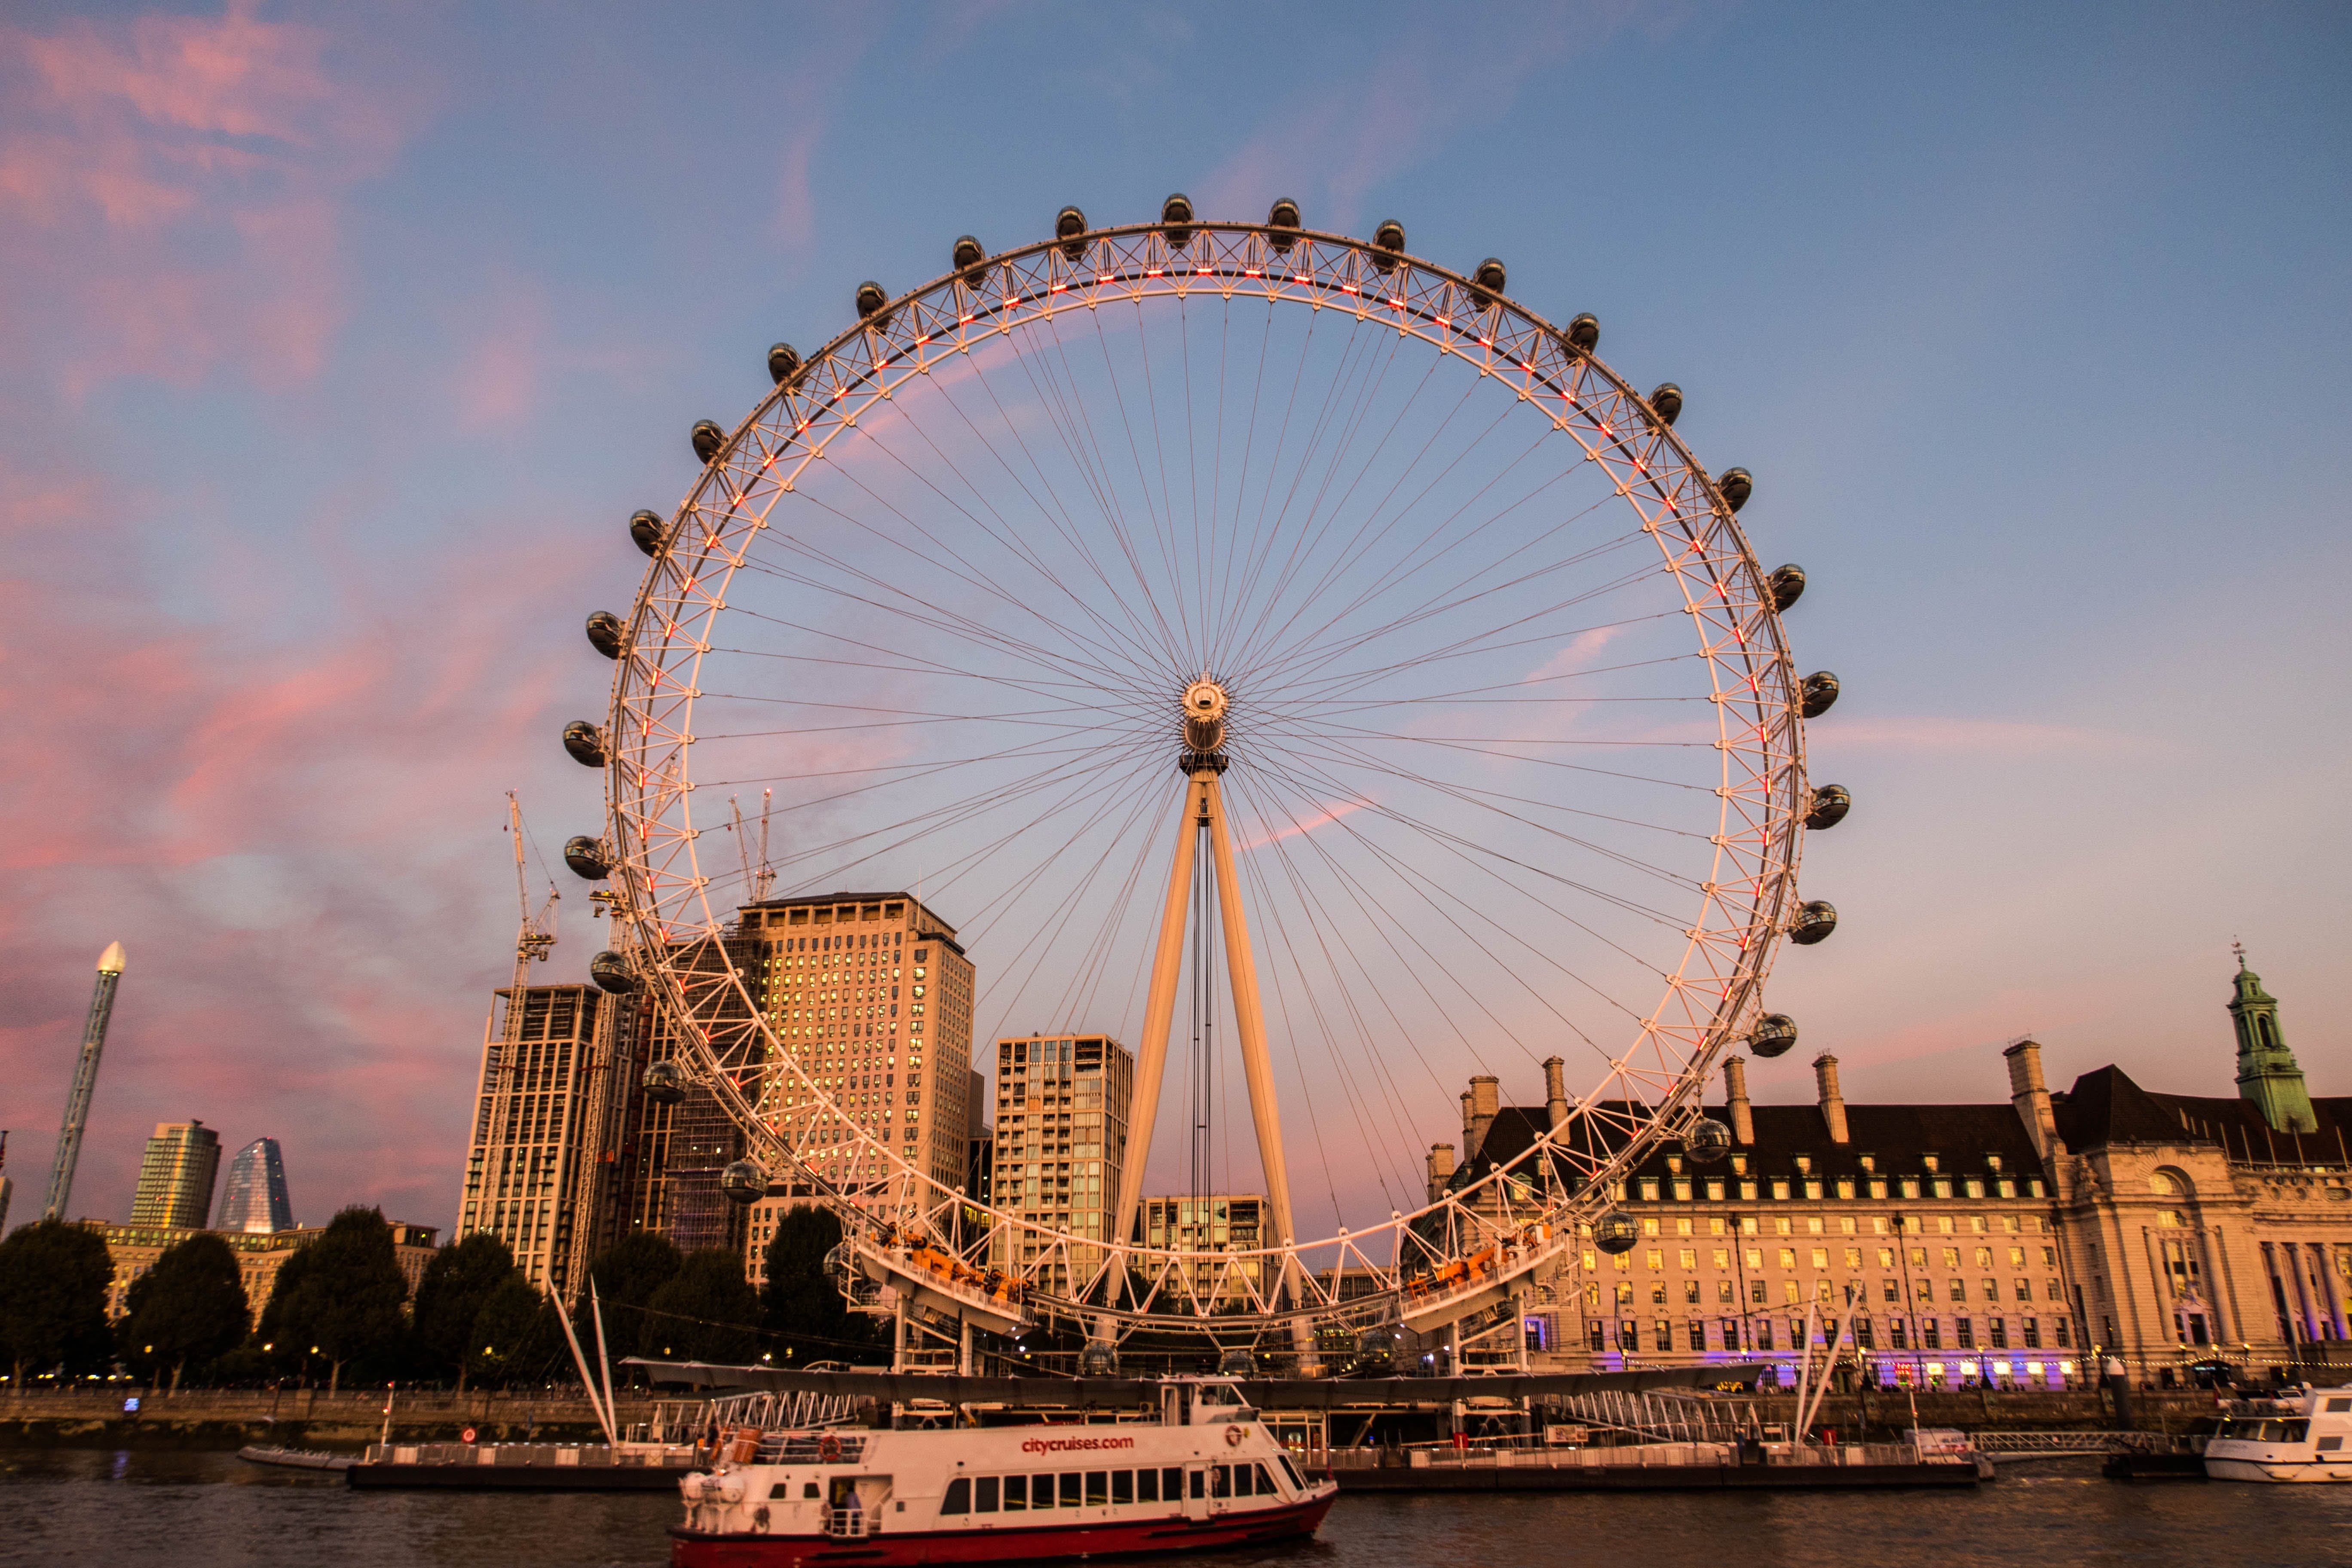 Значение лондона. Лондонский глаз London Eye. Лондонский глаз и Тауэрский мост. Биг Бен и колесо обозрения в Лондоне. Достопримечательности Лондона «Лондонский глаз» (London Eye).